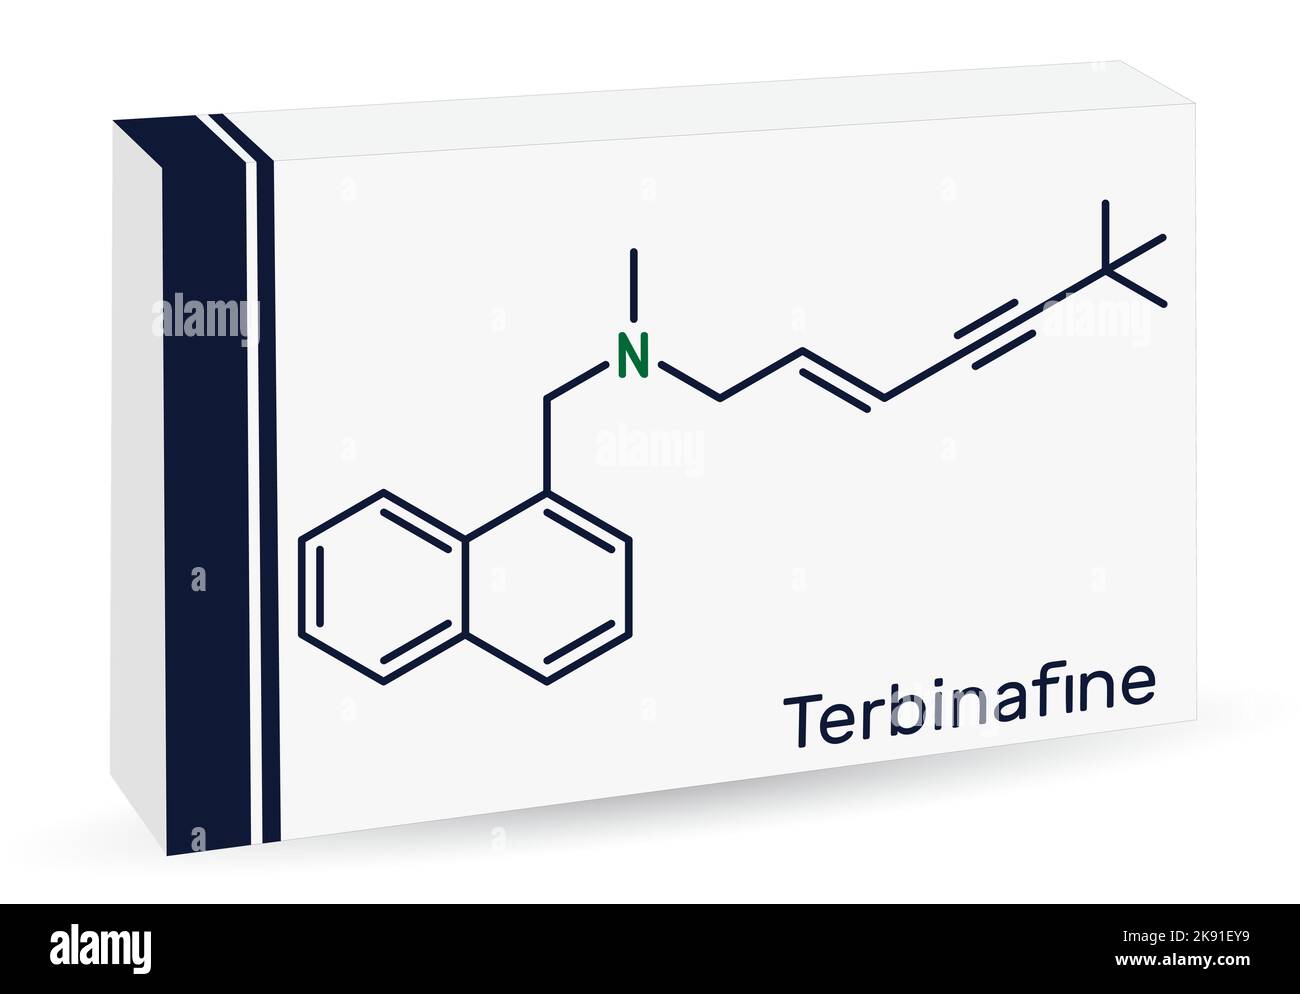 Terbinafin-Molekül. Chemische Formel des Skeletts. Papierverpackungen für Medikamente. Stock Vektor